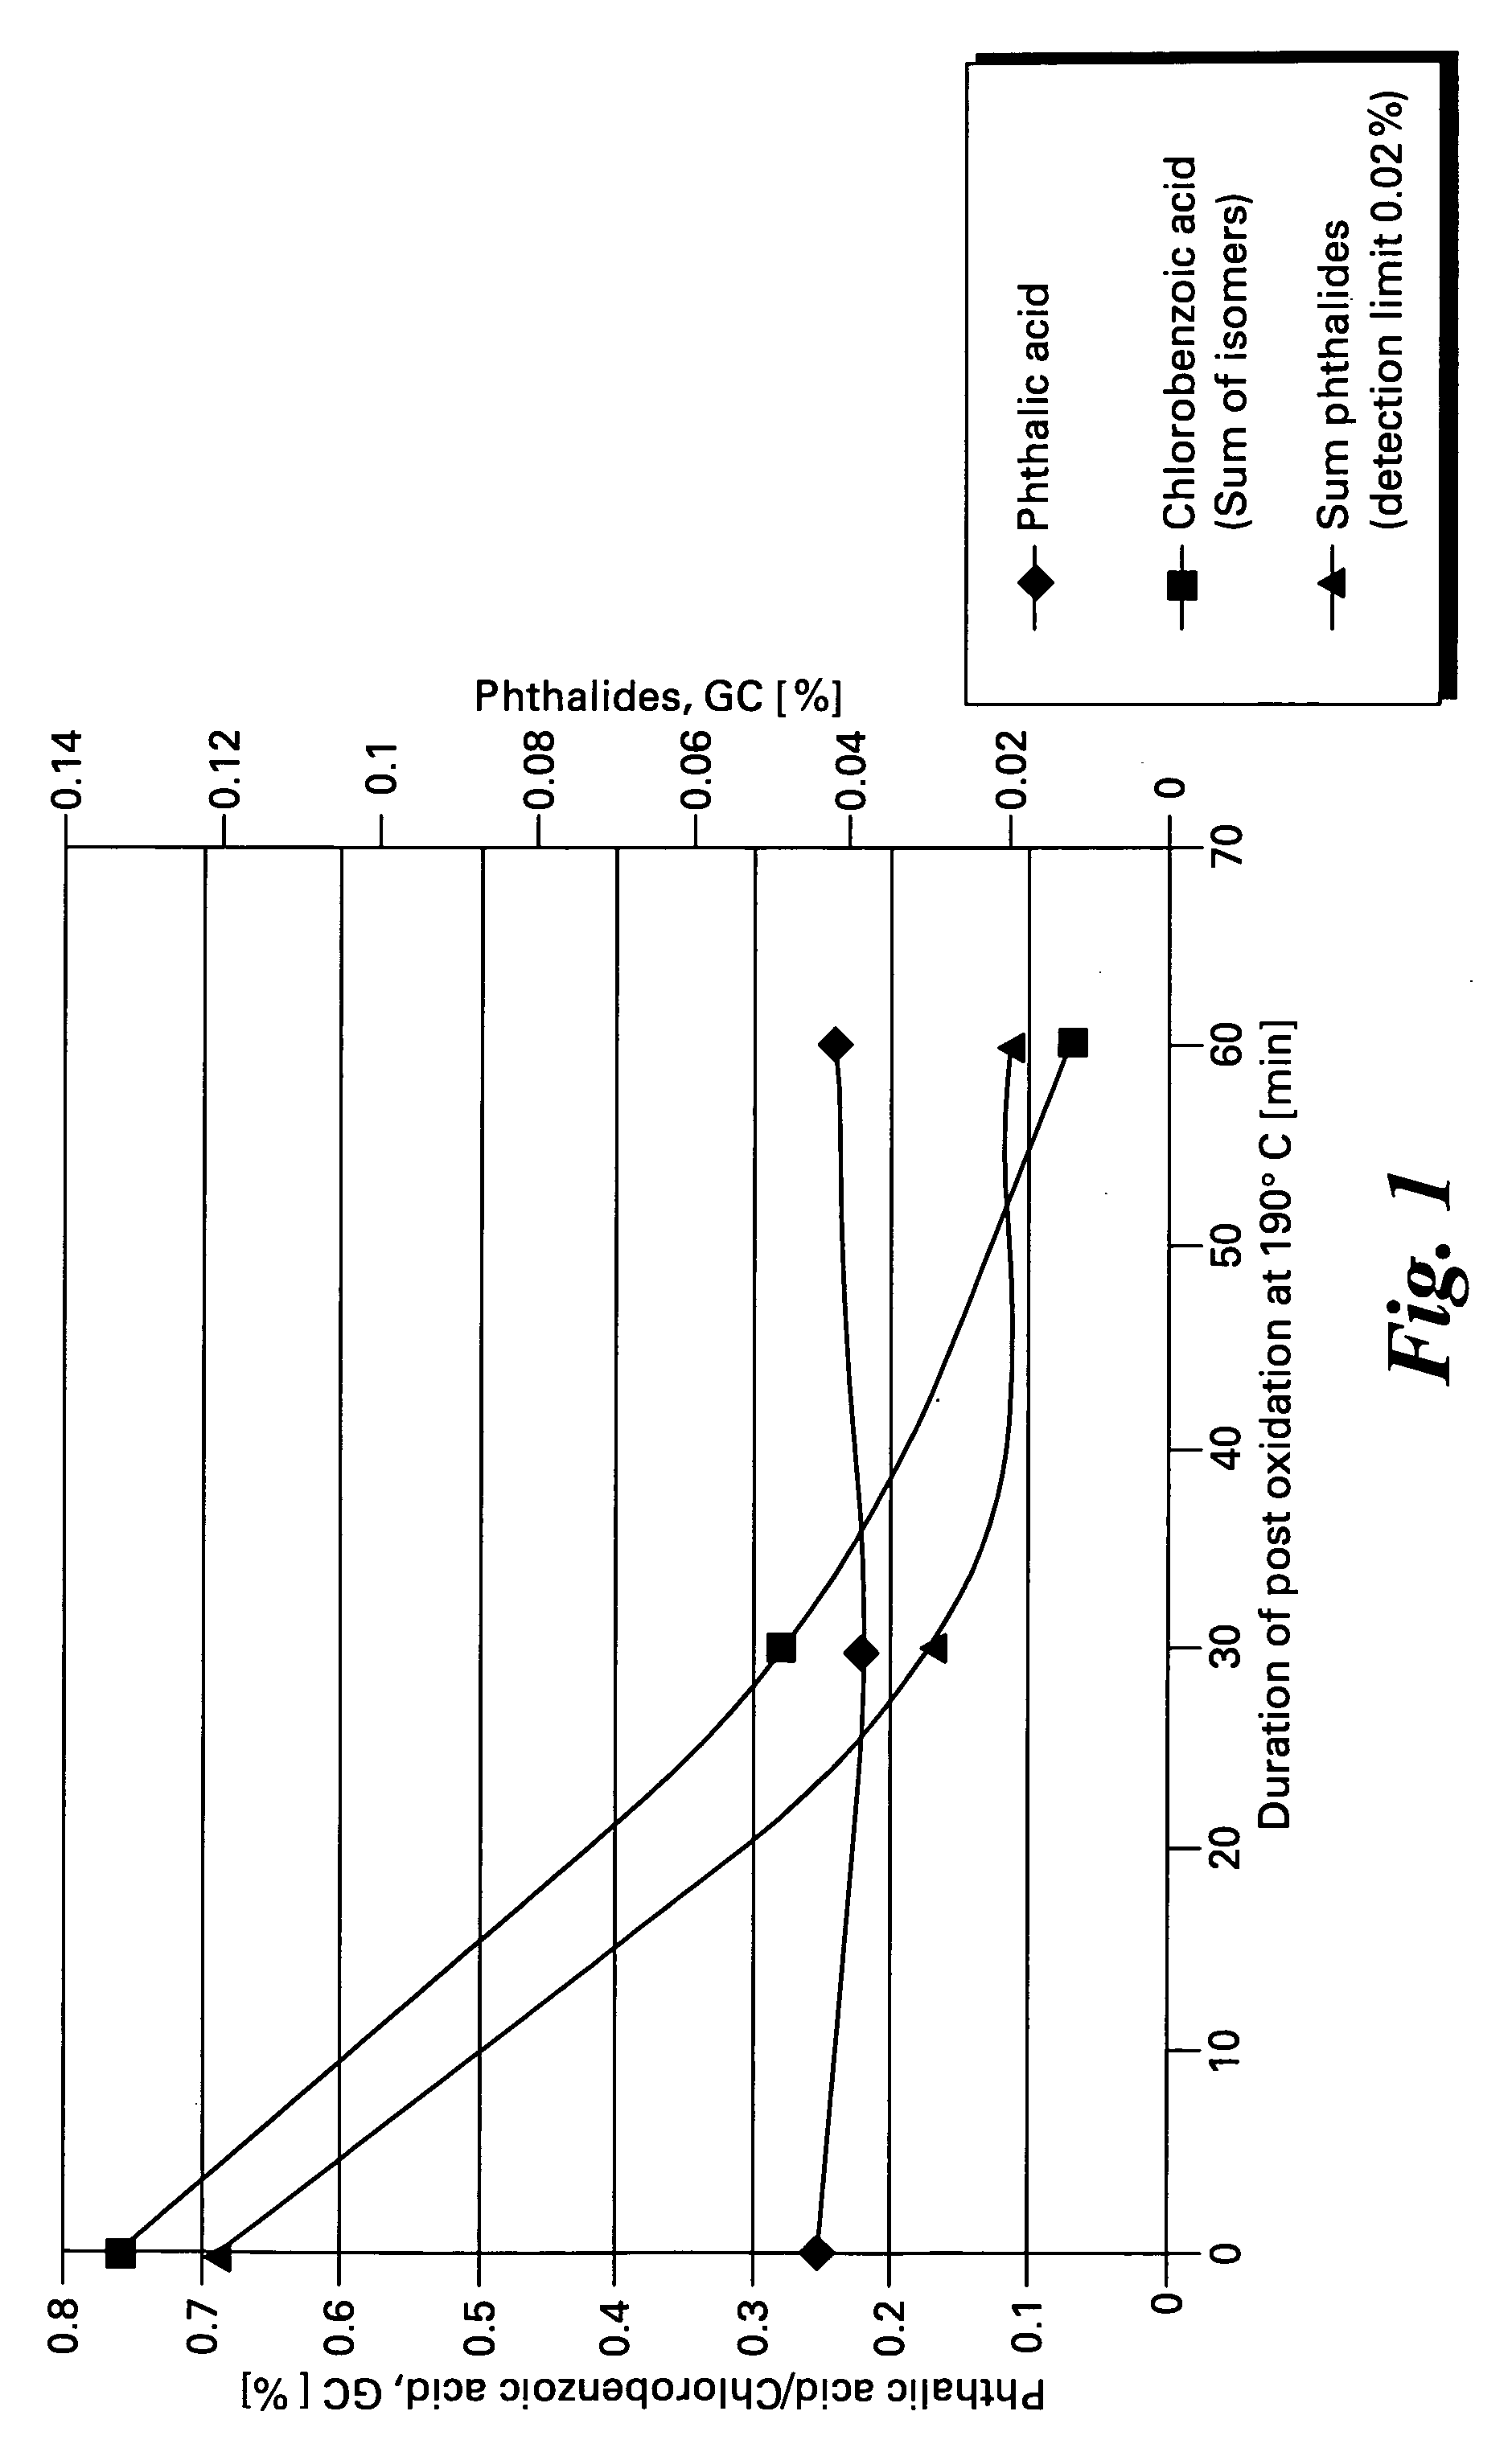 Method of making halophthalic acids and halophthalic anhydrides